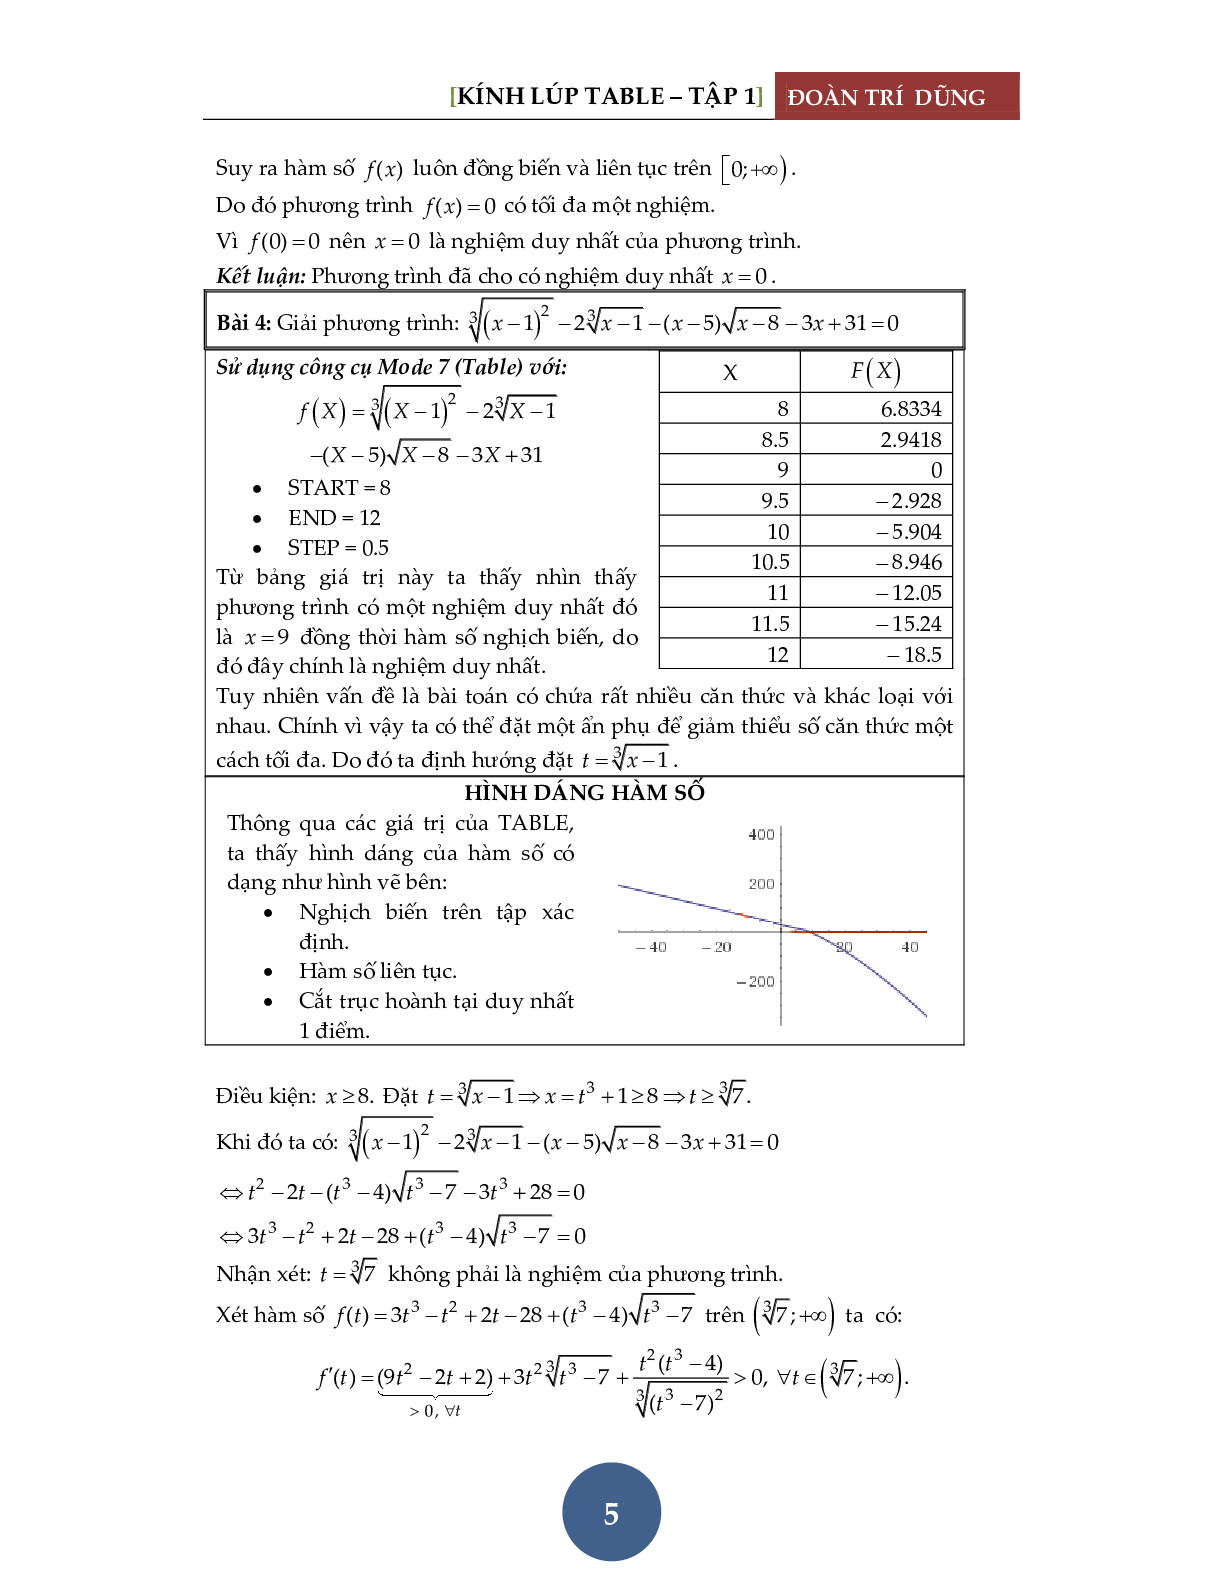 Giải phương trình bằng máy tính Casio – Đánh giá hàm đơn điệu (trang 6)